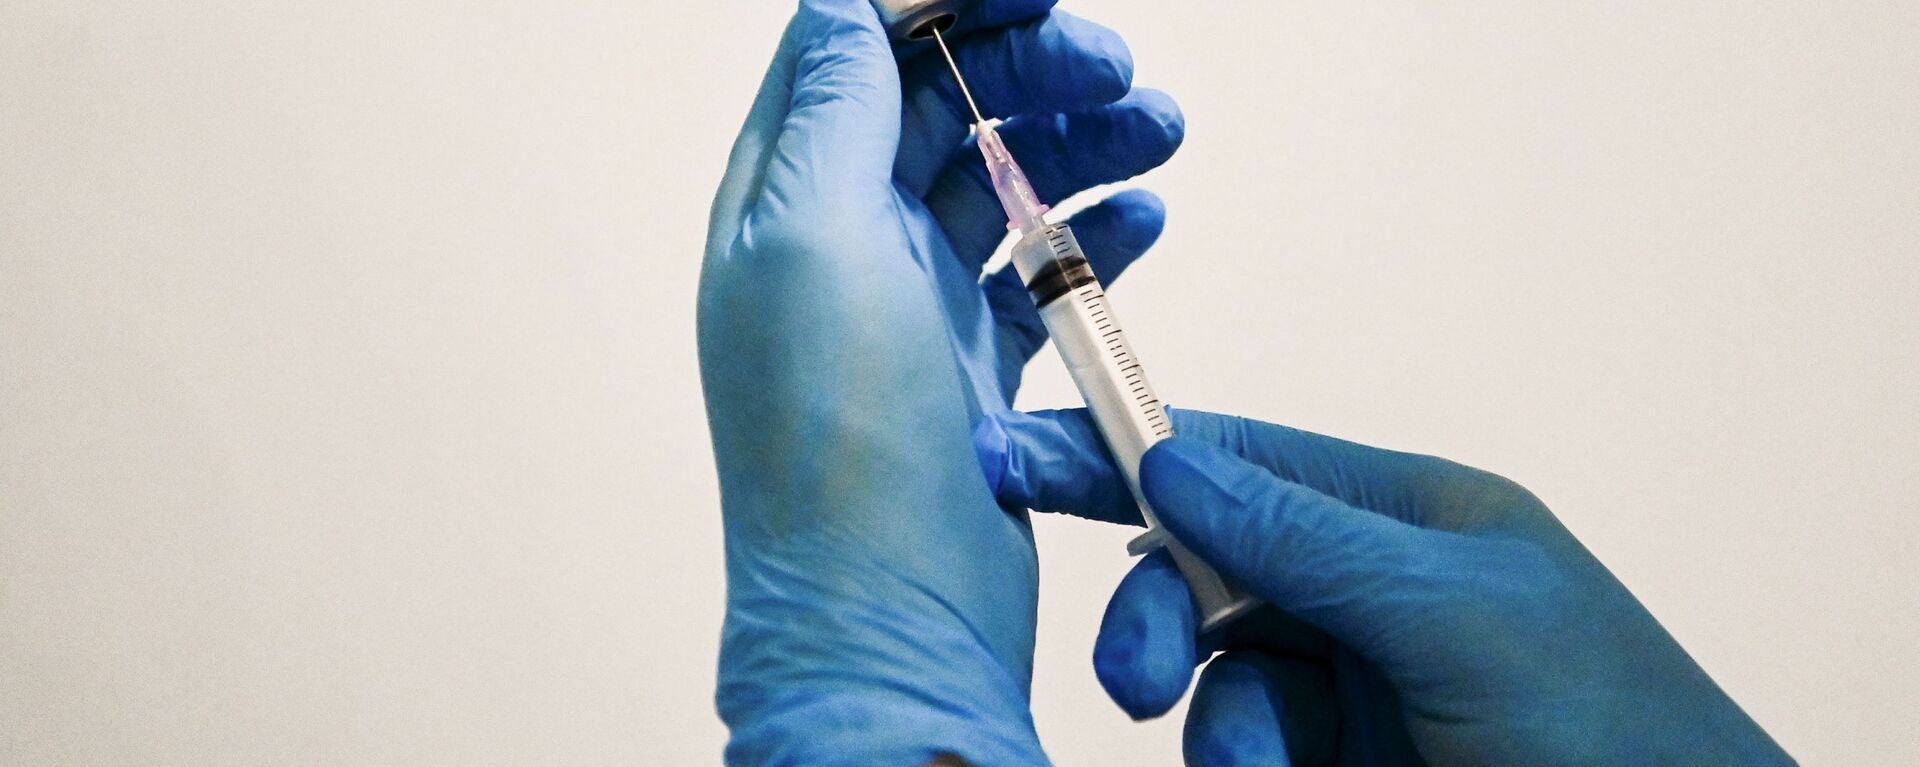 Медицинский сотрудник держит в руках вакцину Спутник V в пункте вакцинации - Sputnik Lietuva, 1920, 25.01.2021